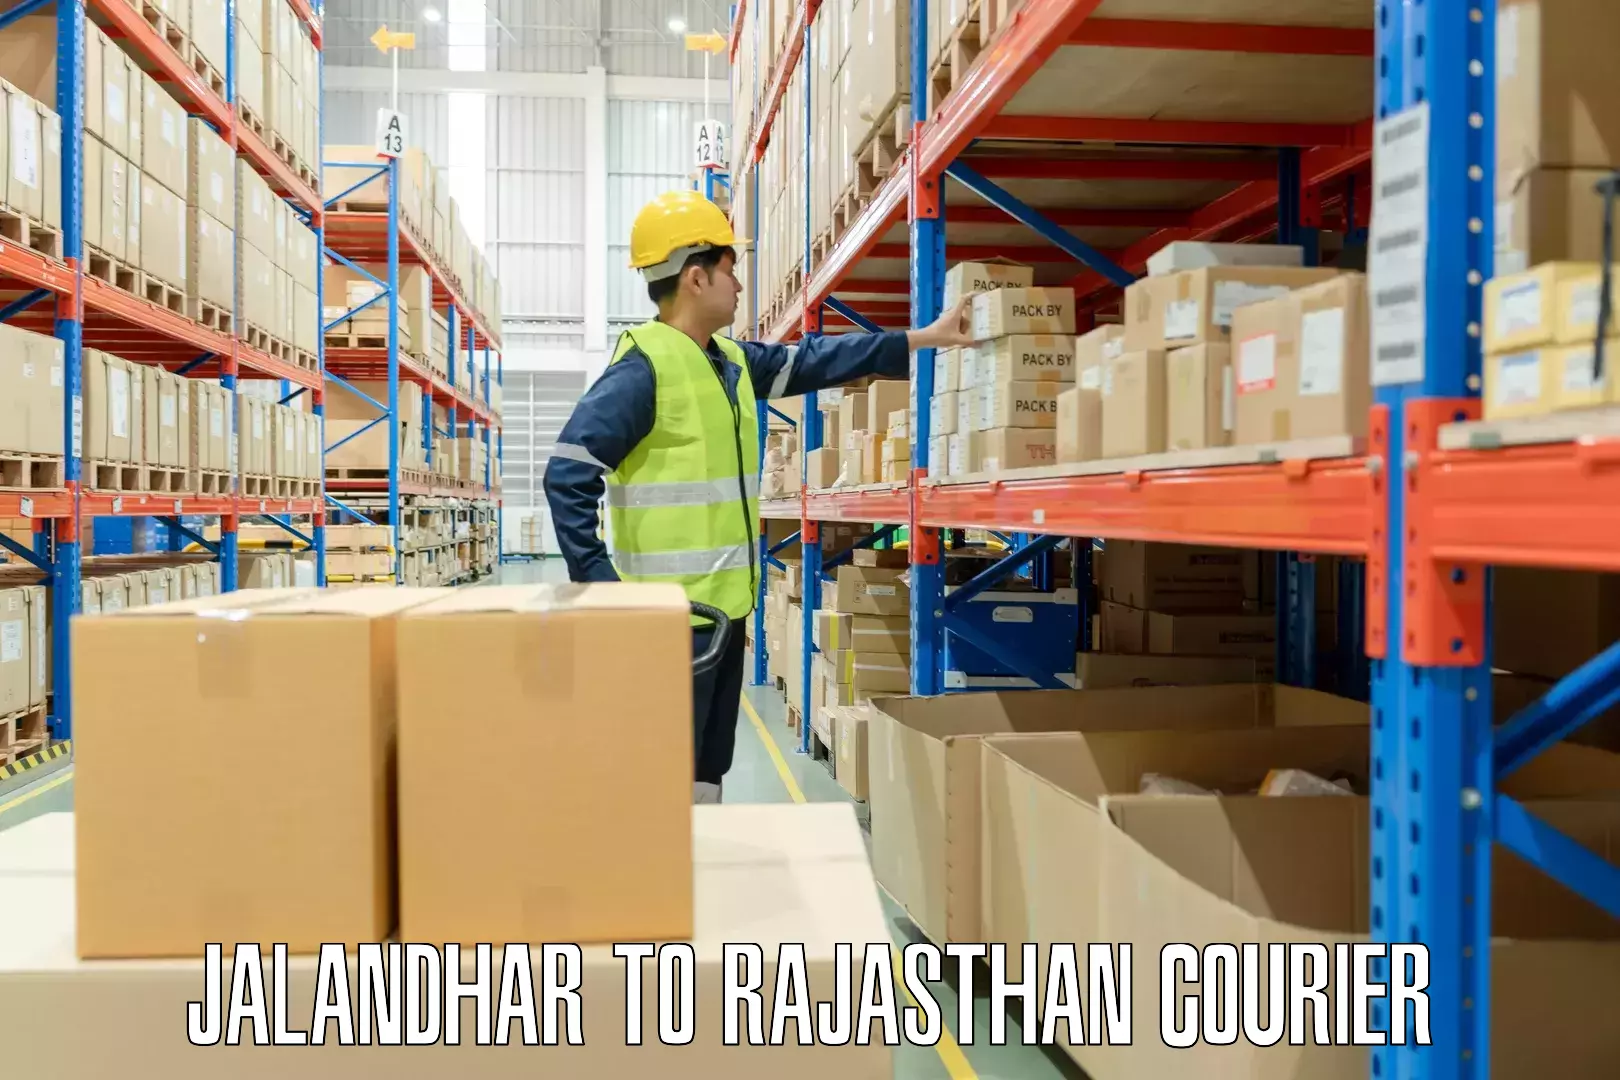 Luggage shipment tracking Jalandhar to Rajasthan